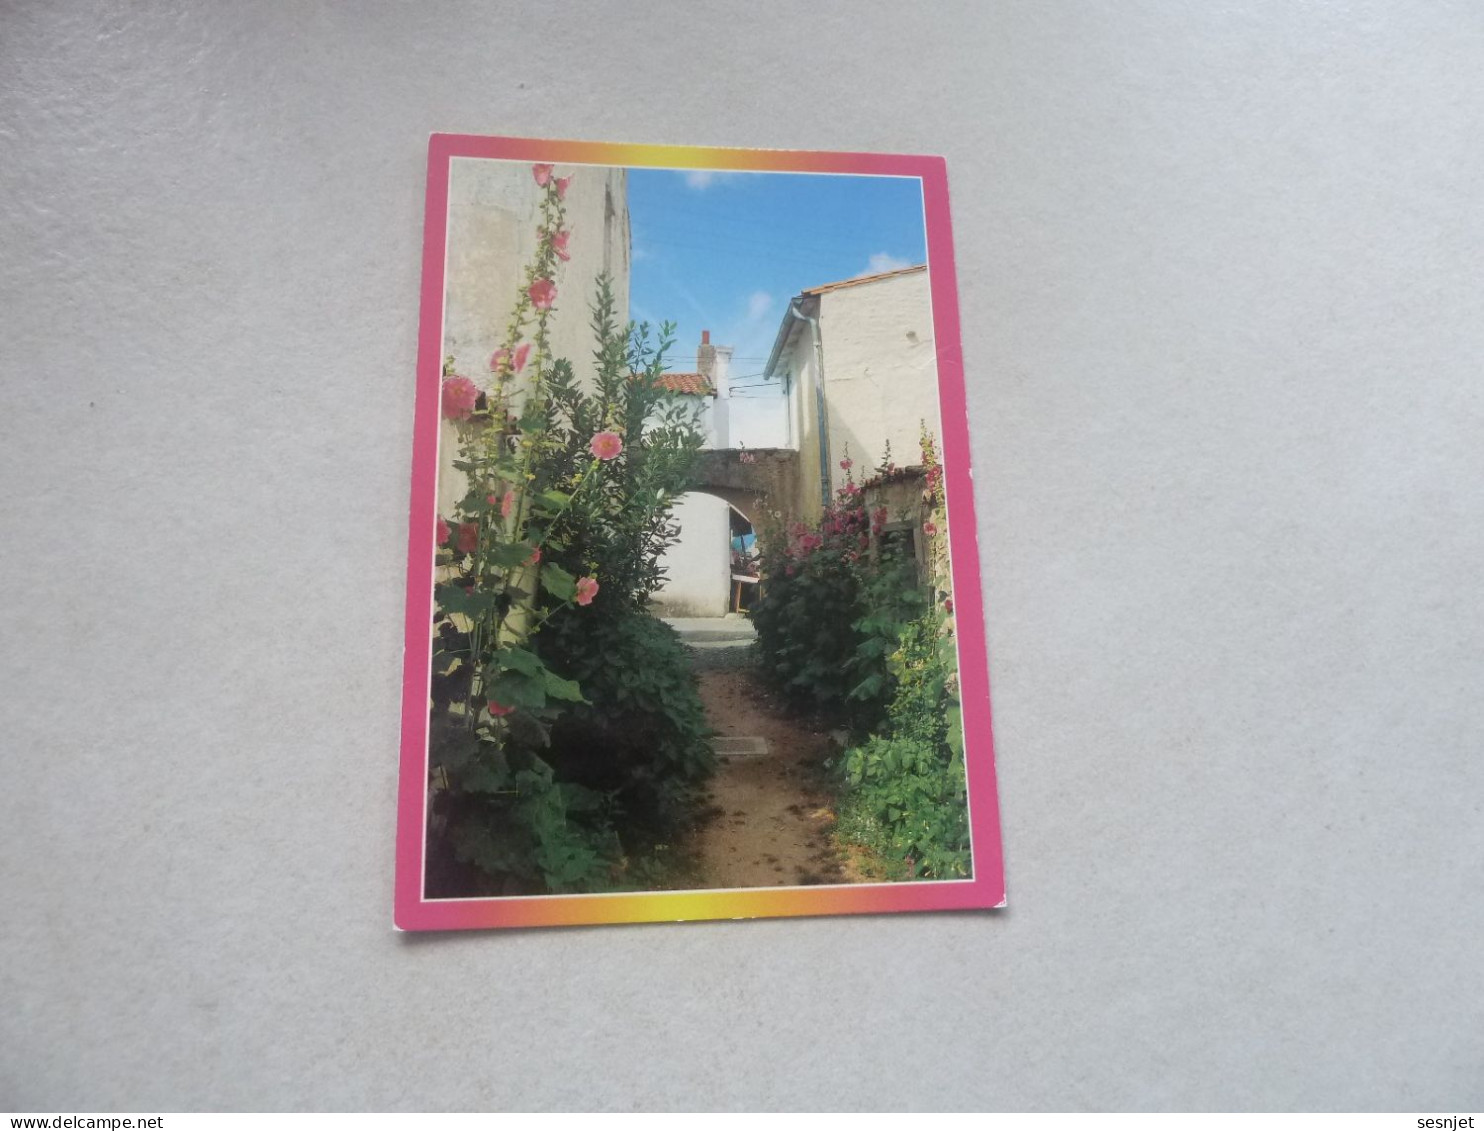 L'Ile-de-Ré - Les Portes - Venelle En Fleurs - R 153 - Editions As-de-Coeur - Artaud Frères - Année 1990 - - Flowers